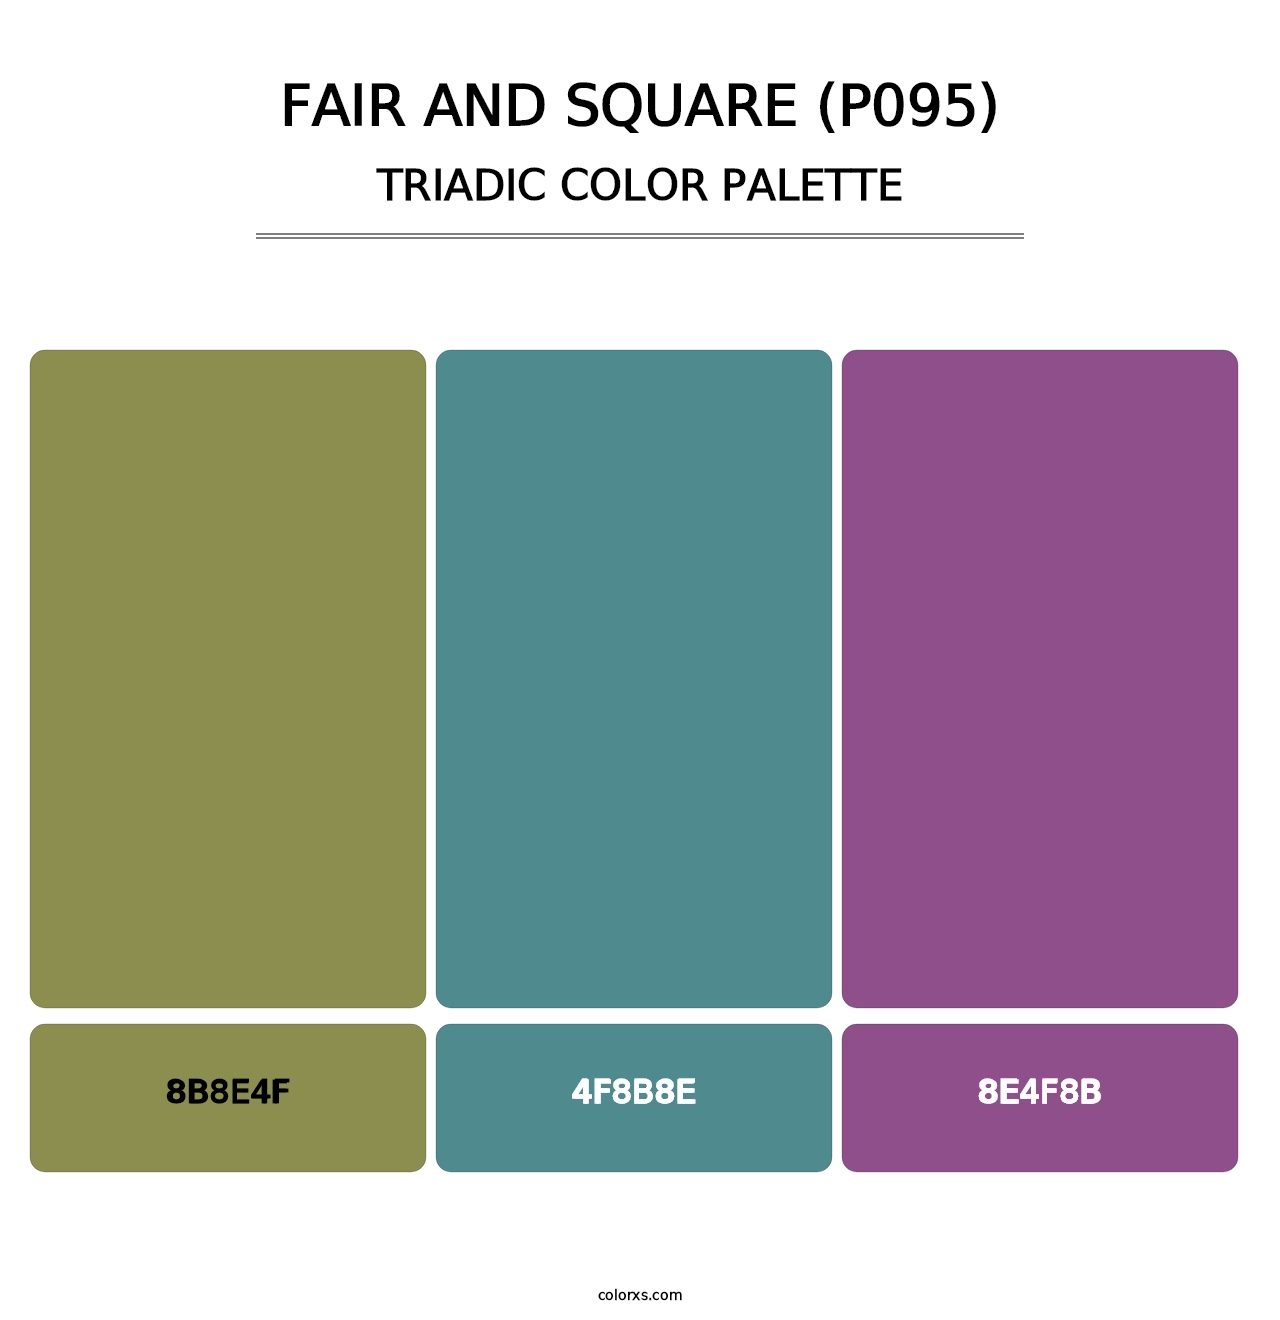 Fair and Square (P095) - Triadic Color Palette